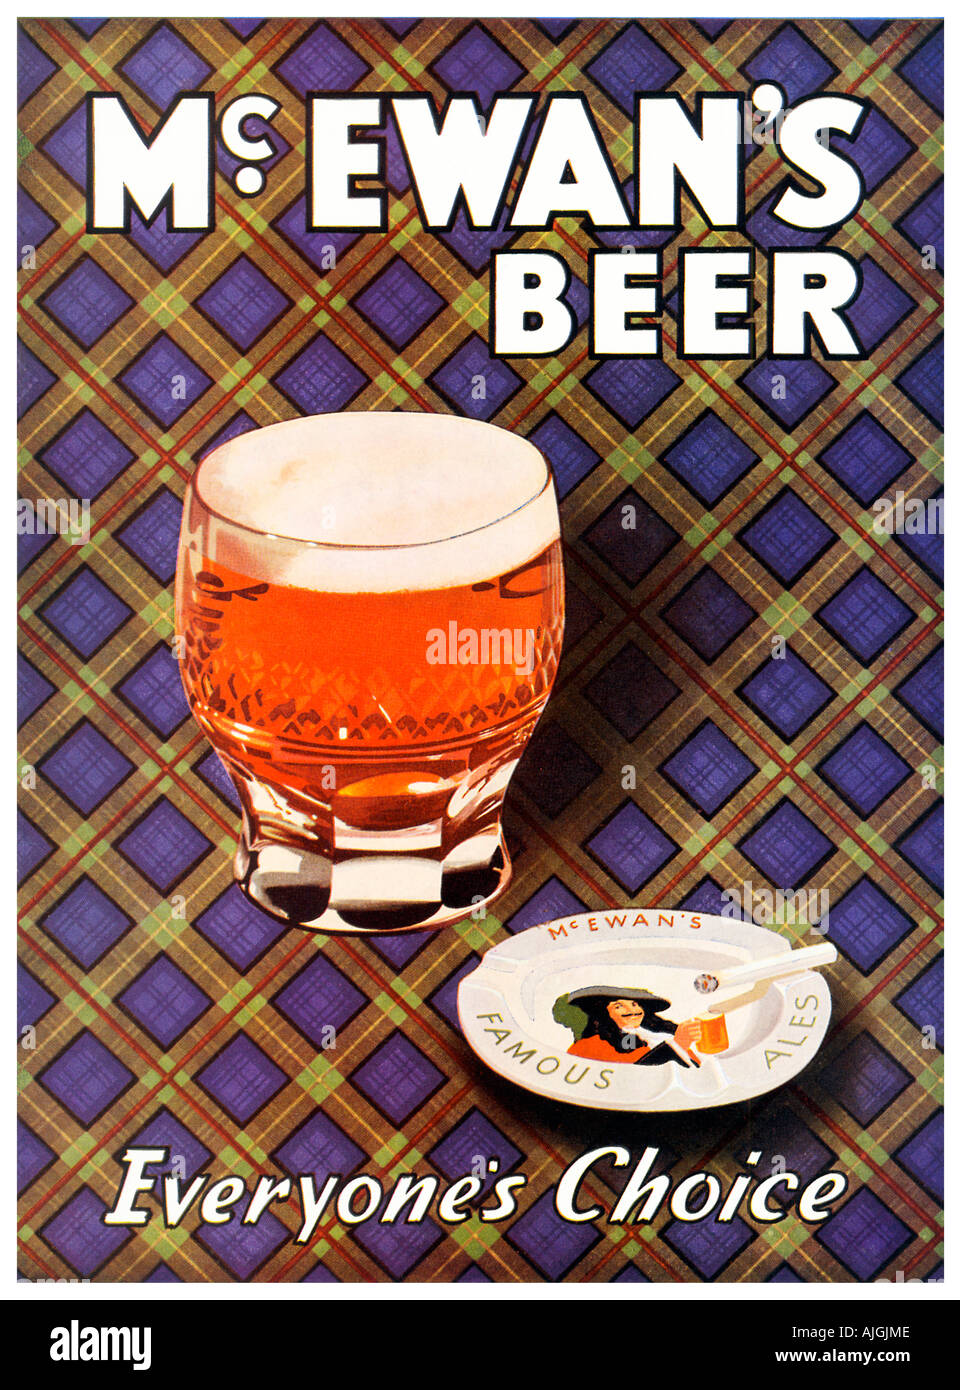 McEwans Beer, jedermanns Wahl der 1950er Jahre Werbung für das schottische Bier mit einem Tartan-Hintergrund Stockfoto